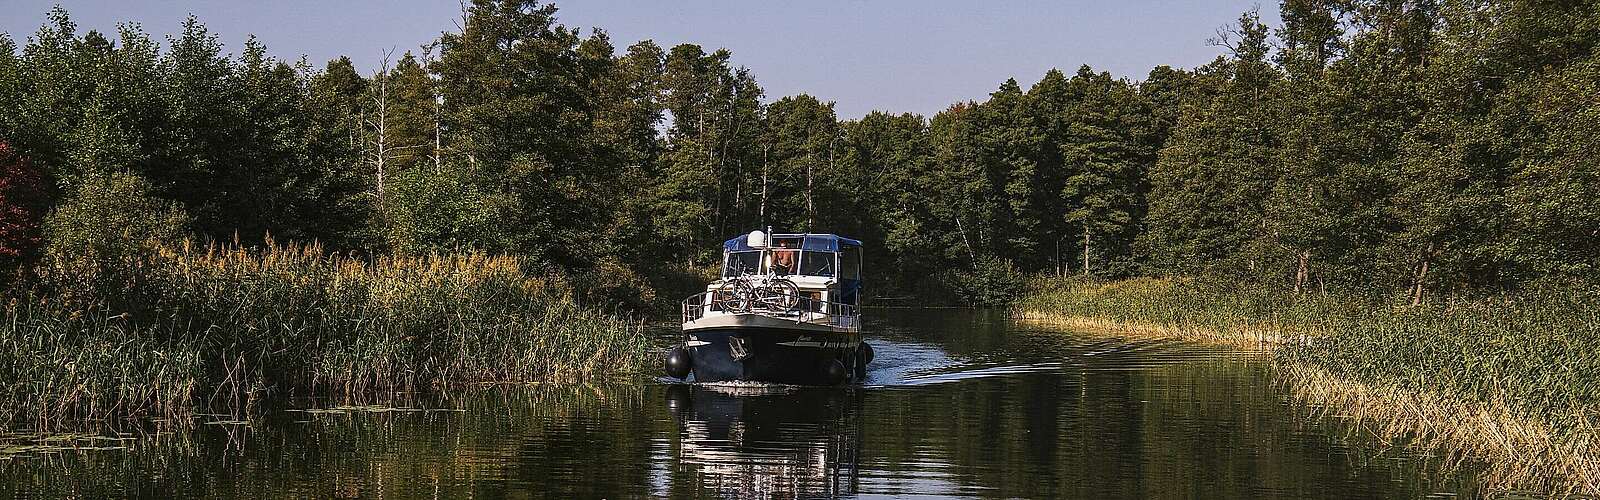 Hausboot in der Wasserlandschaft,
        
    

        Foto: Fotograf / Lizenz - Media Import/Madlen Krippendorf